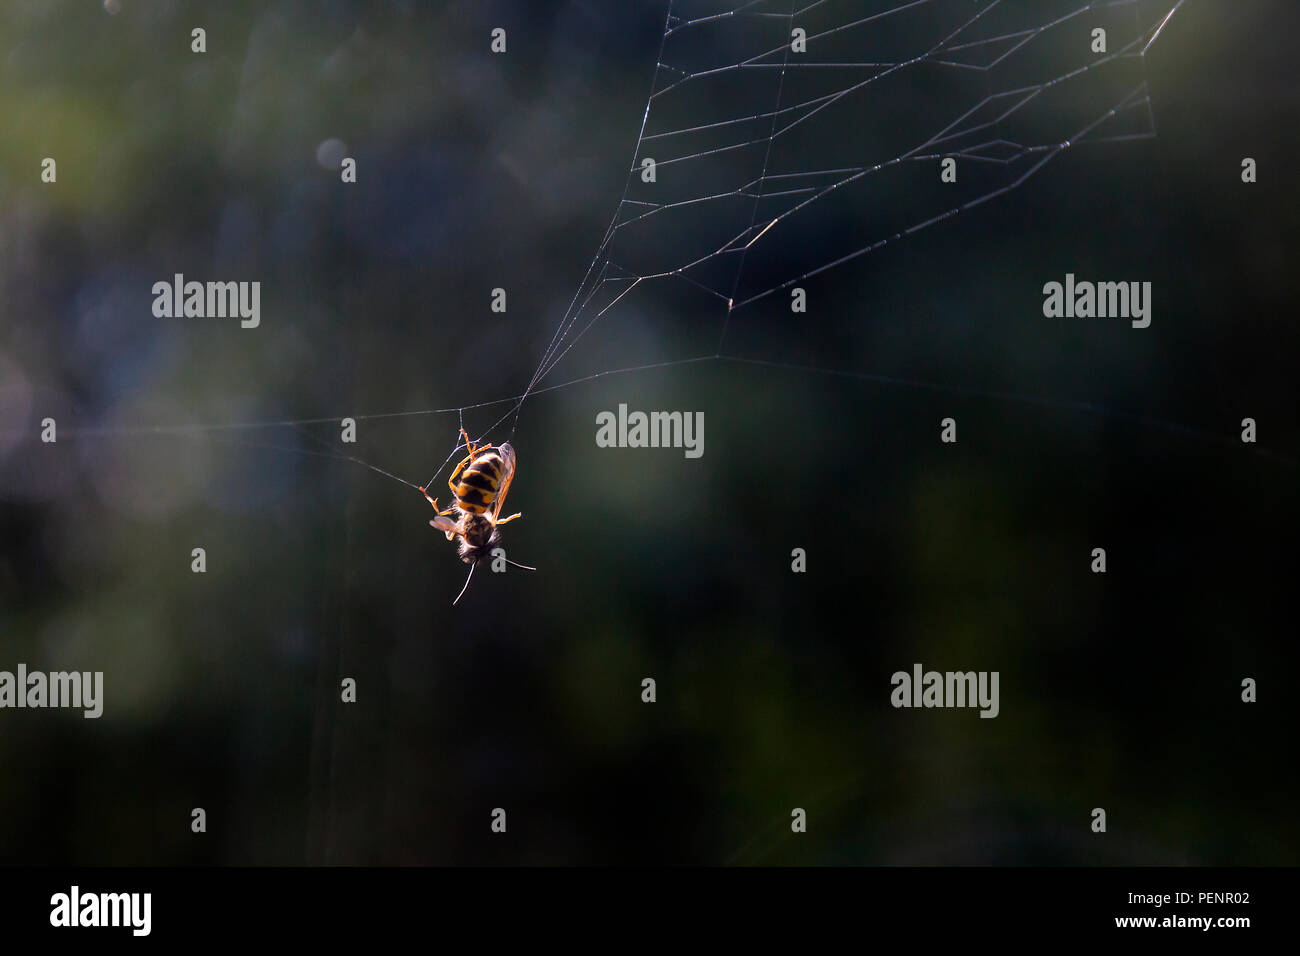 Wespe (Vespula vulgaris) gefangen in Spinnennetz mit natürlichen Seitenbeleuchtung und Soft-Fokus Hintergrund und Kopieraum. Leben hängt an einem Faden Konzept. Stockfoto